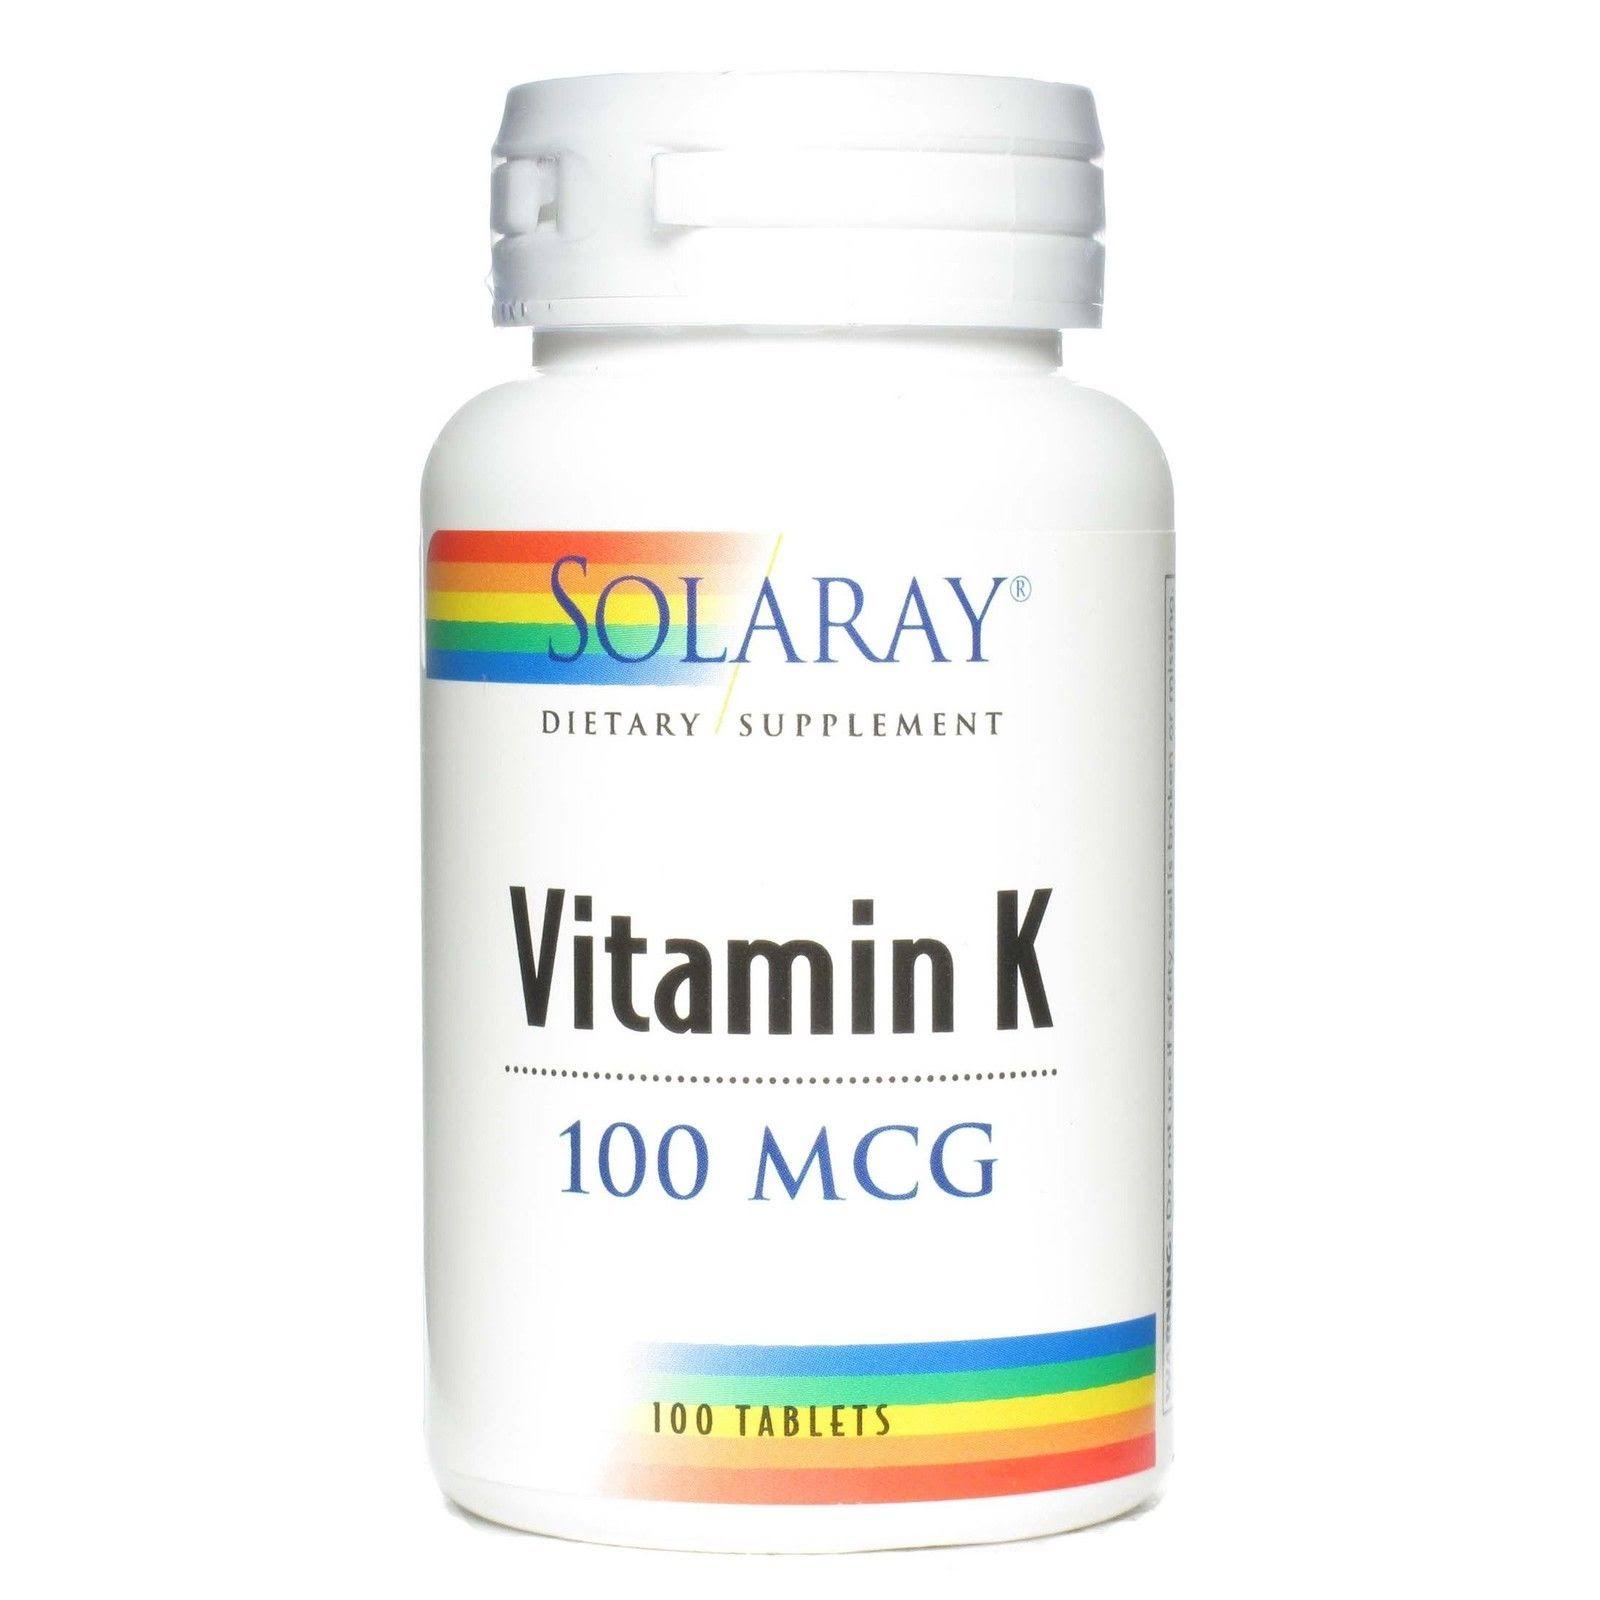 Solaray Vitamin K 100 mcg Dietary Supplement - 100 Tablets